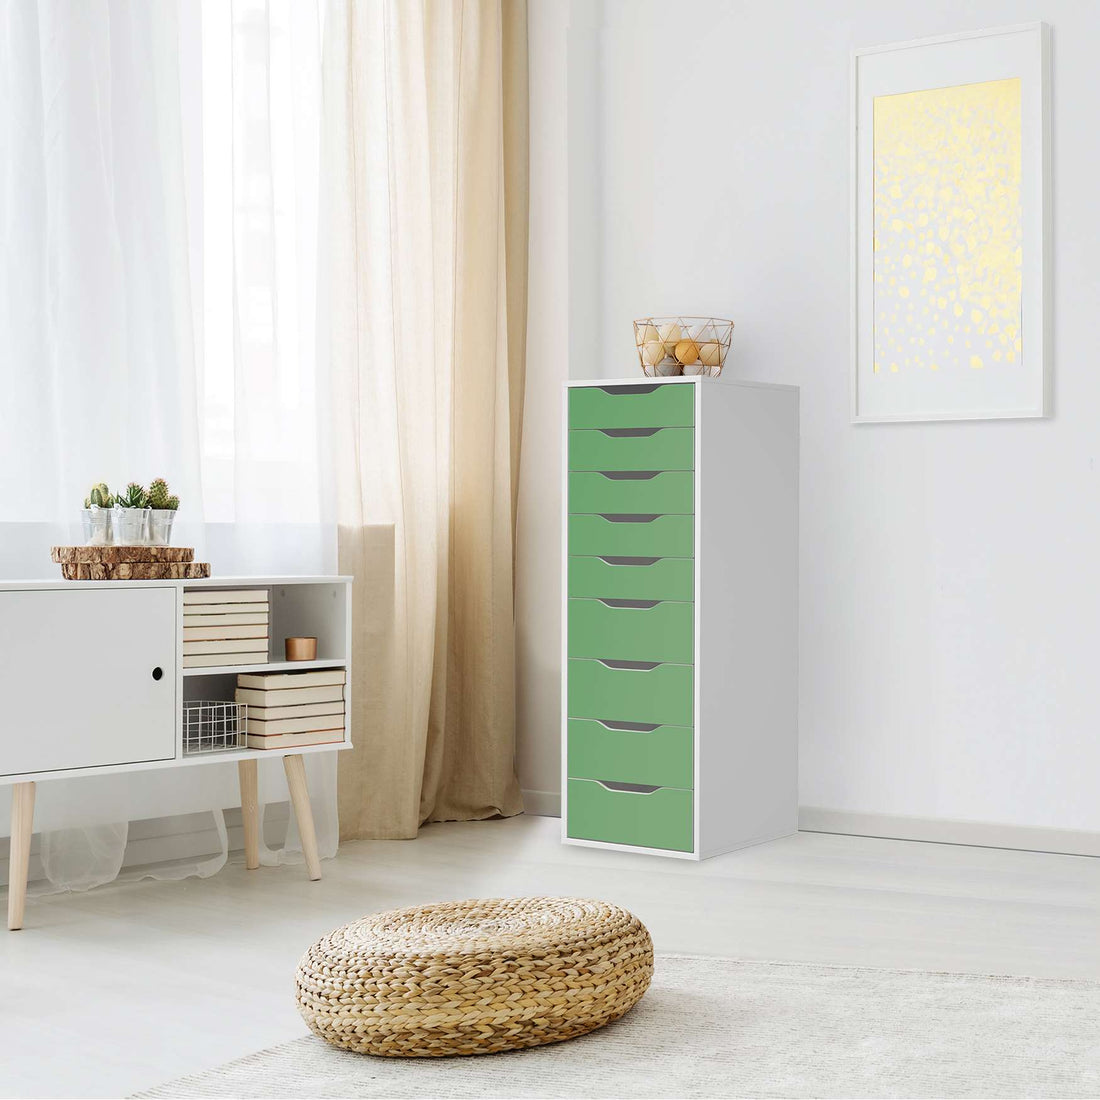 Folie für Möbel Grün Light - IKEA Alex 9 Schubladen - Wohnzimmer